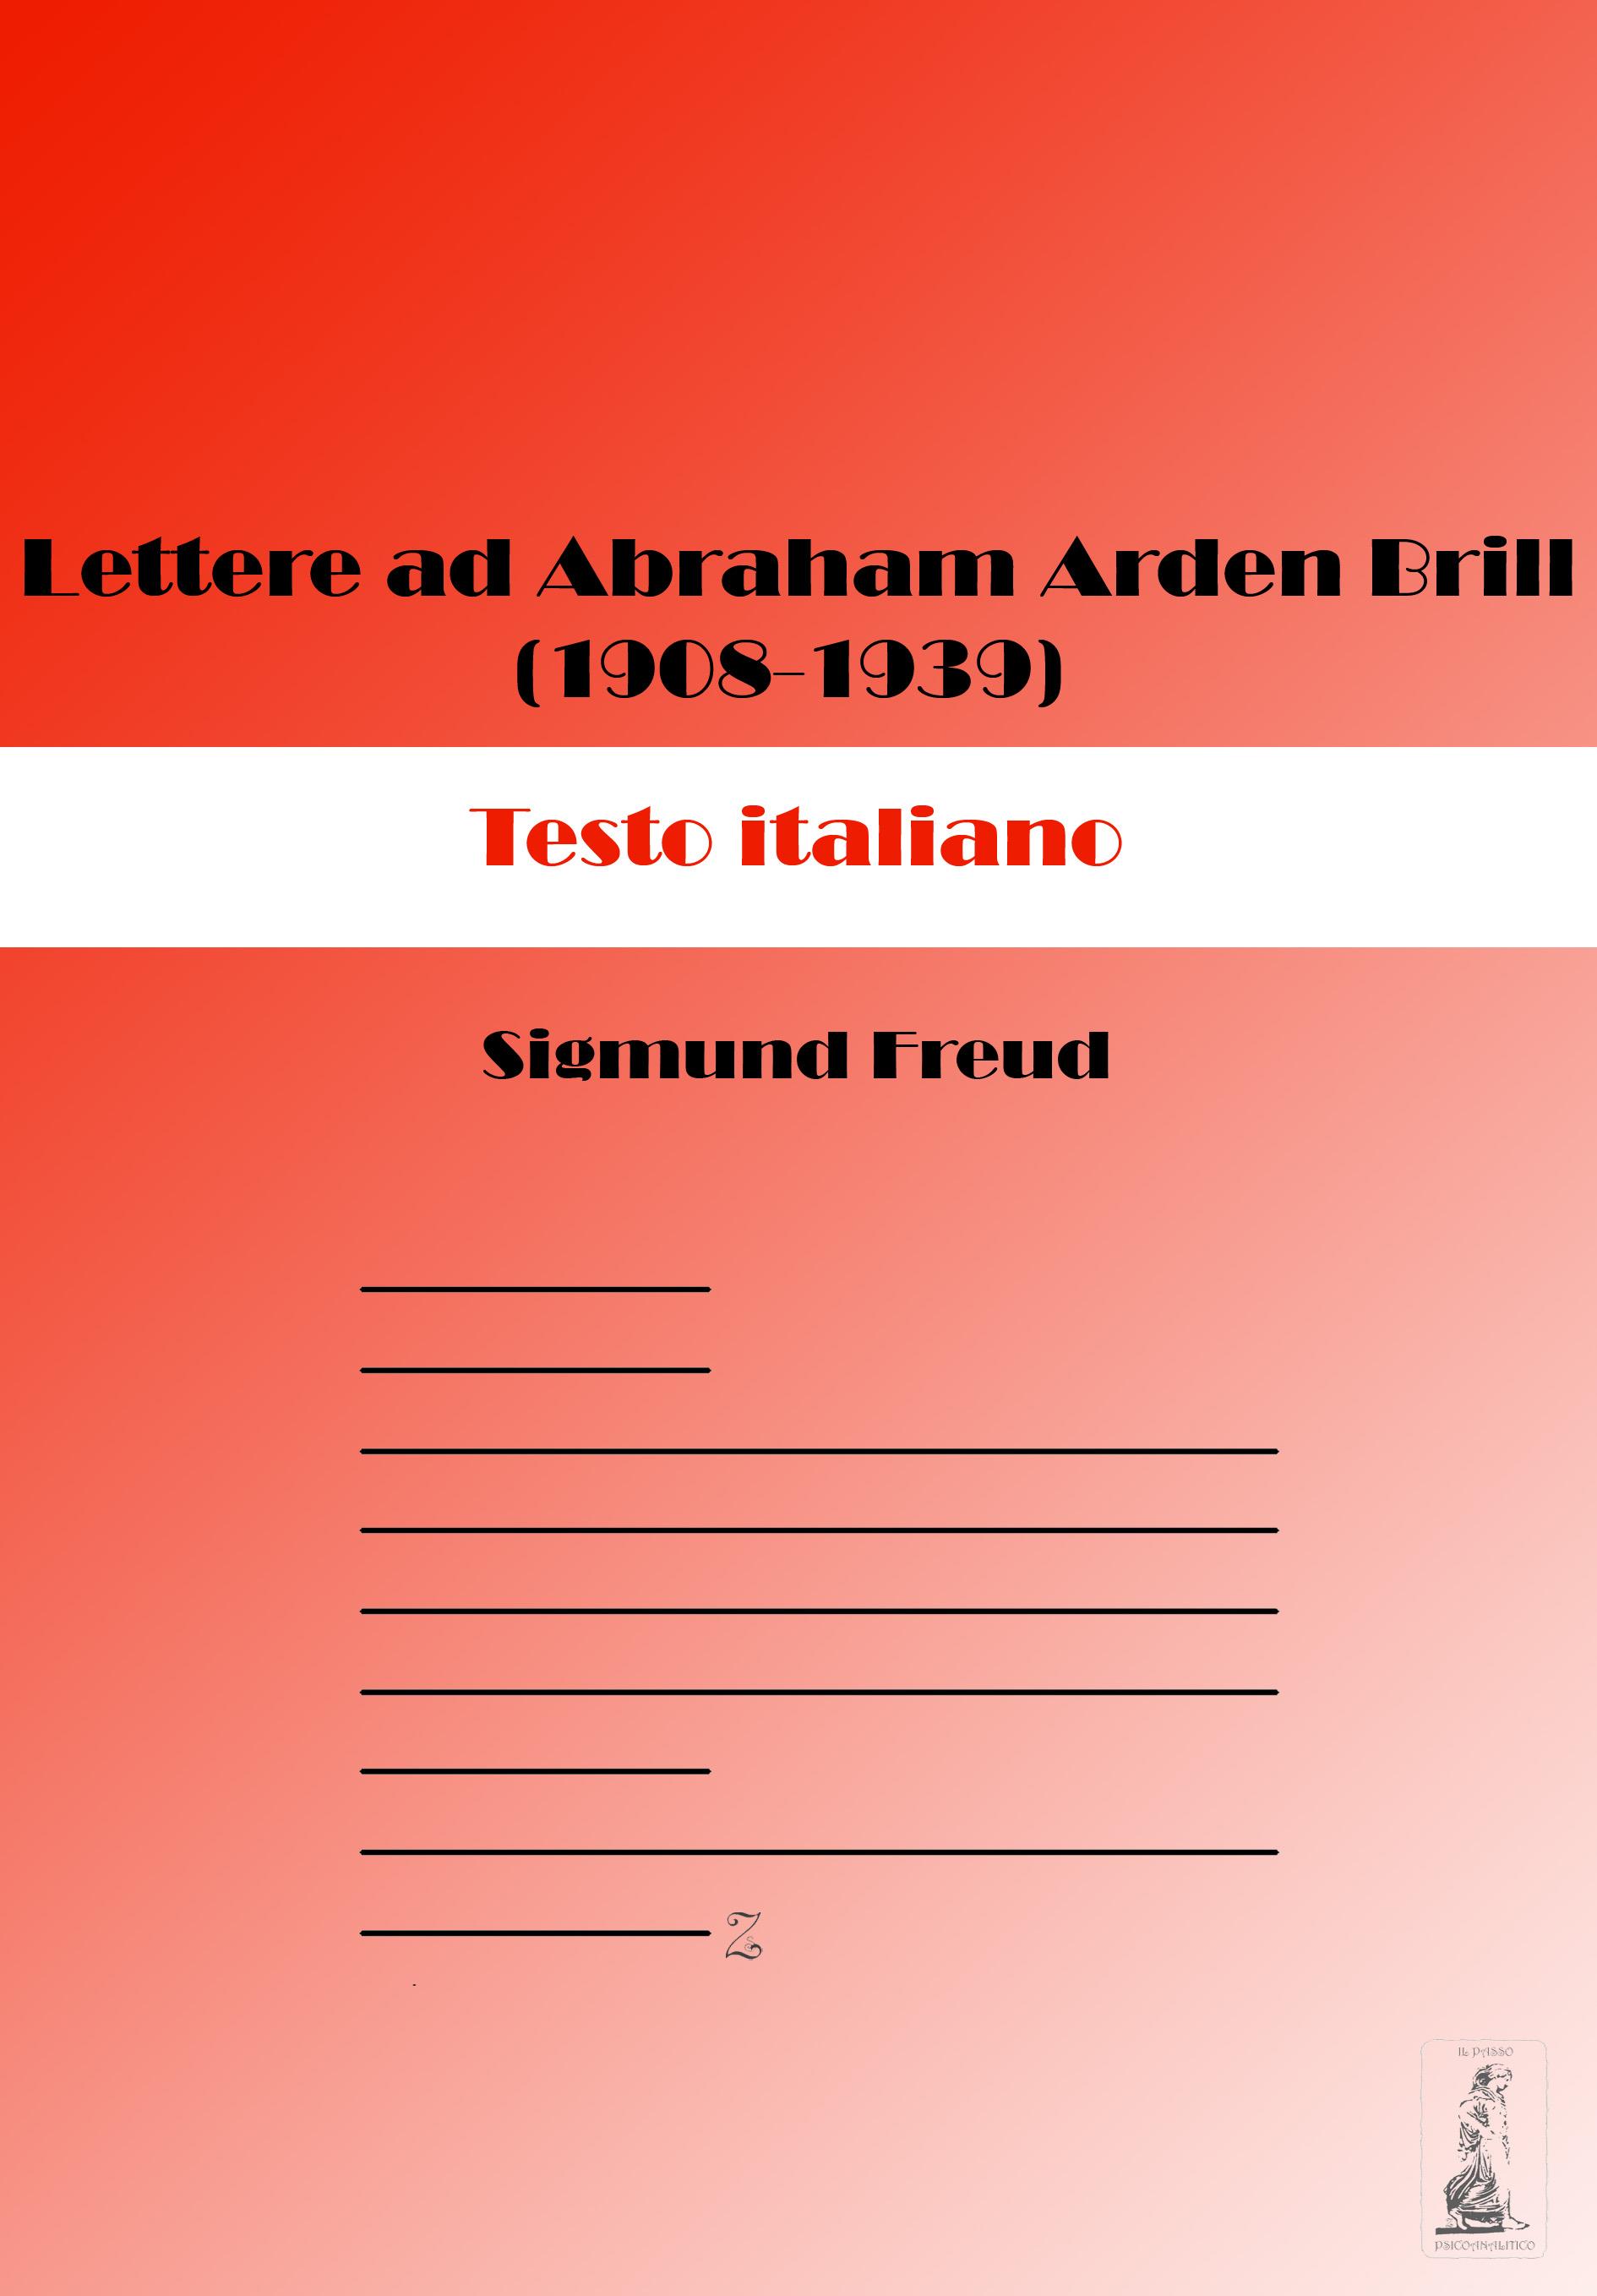 Lettere ad Abraham Arden Brill (1908-1939). Testo italiano